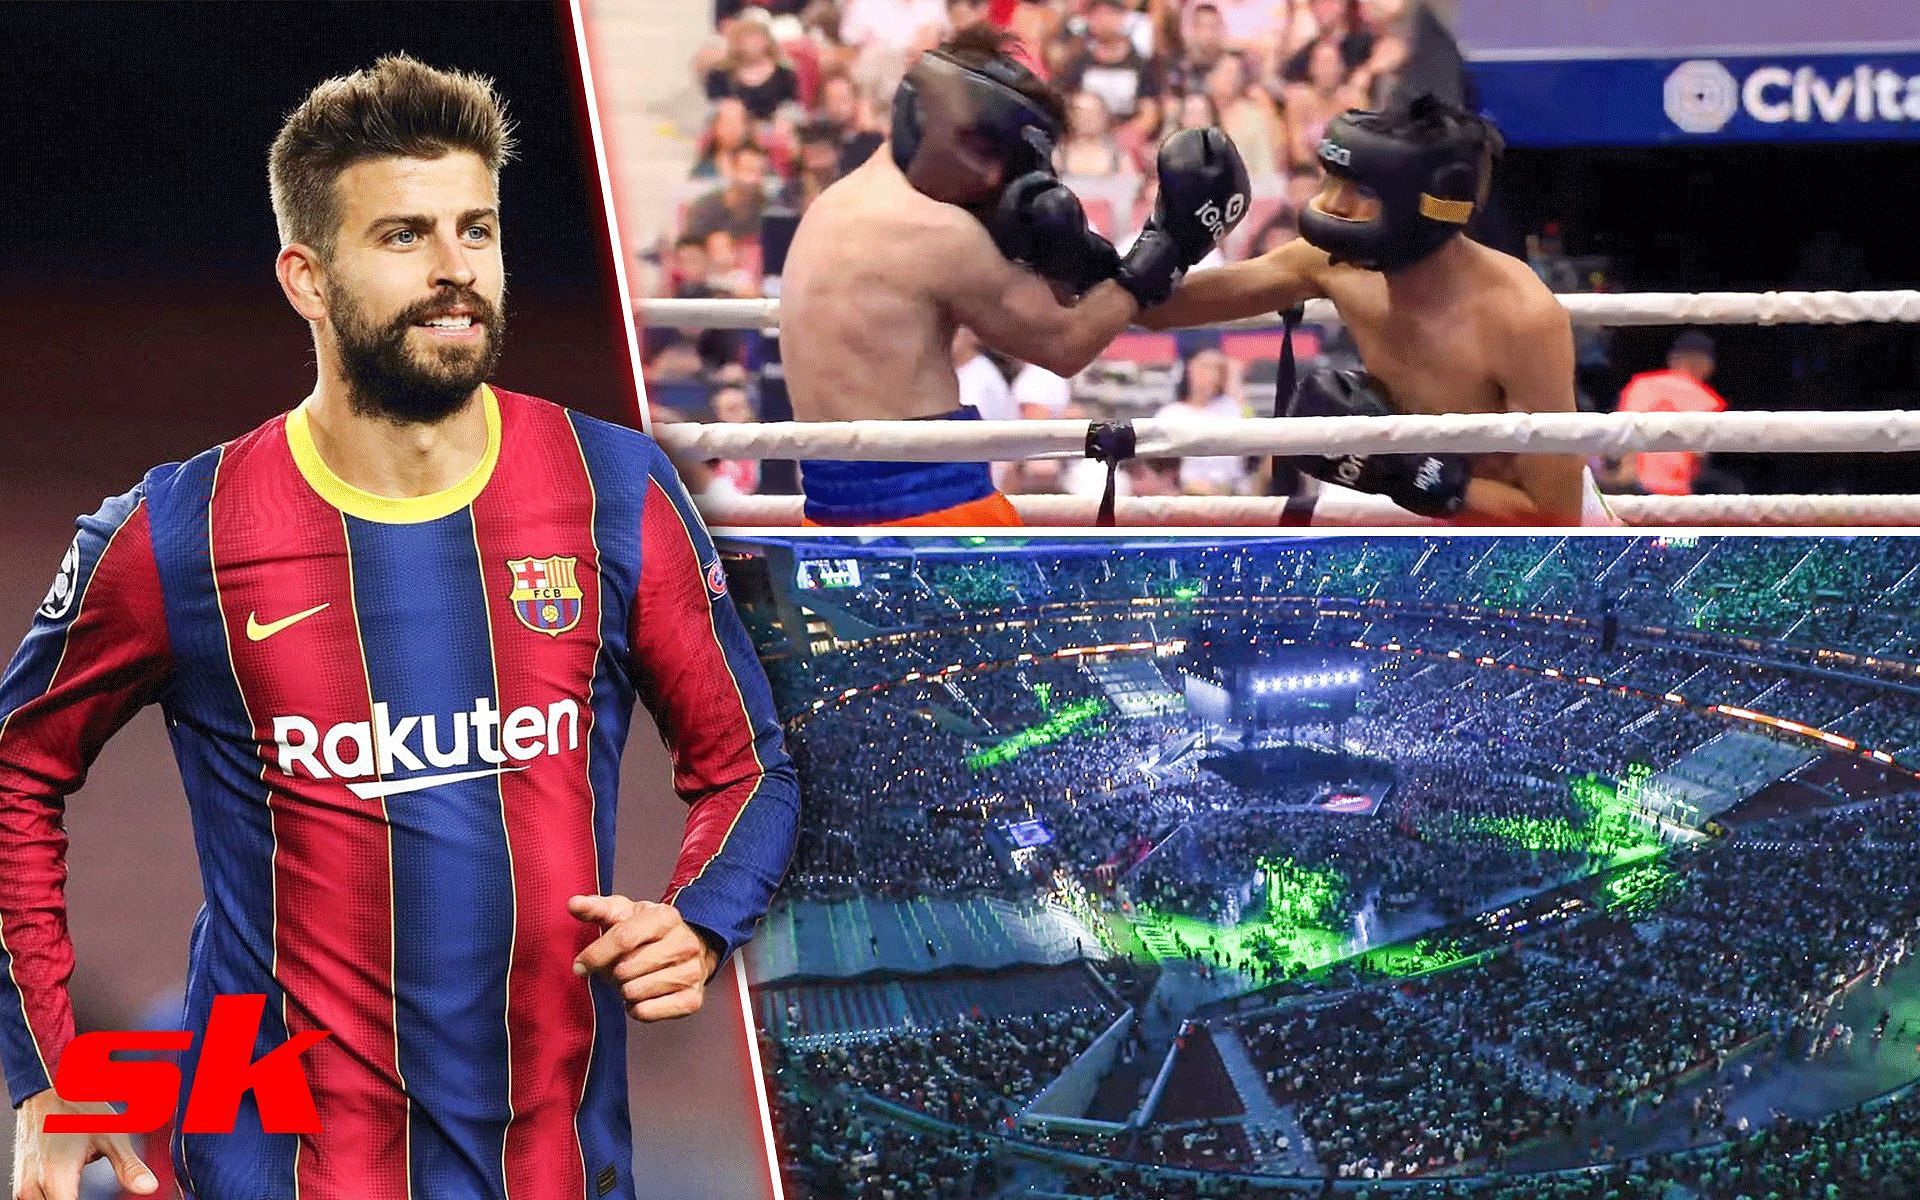 La Velada del Año 3, the boxing event, the most watched live stream